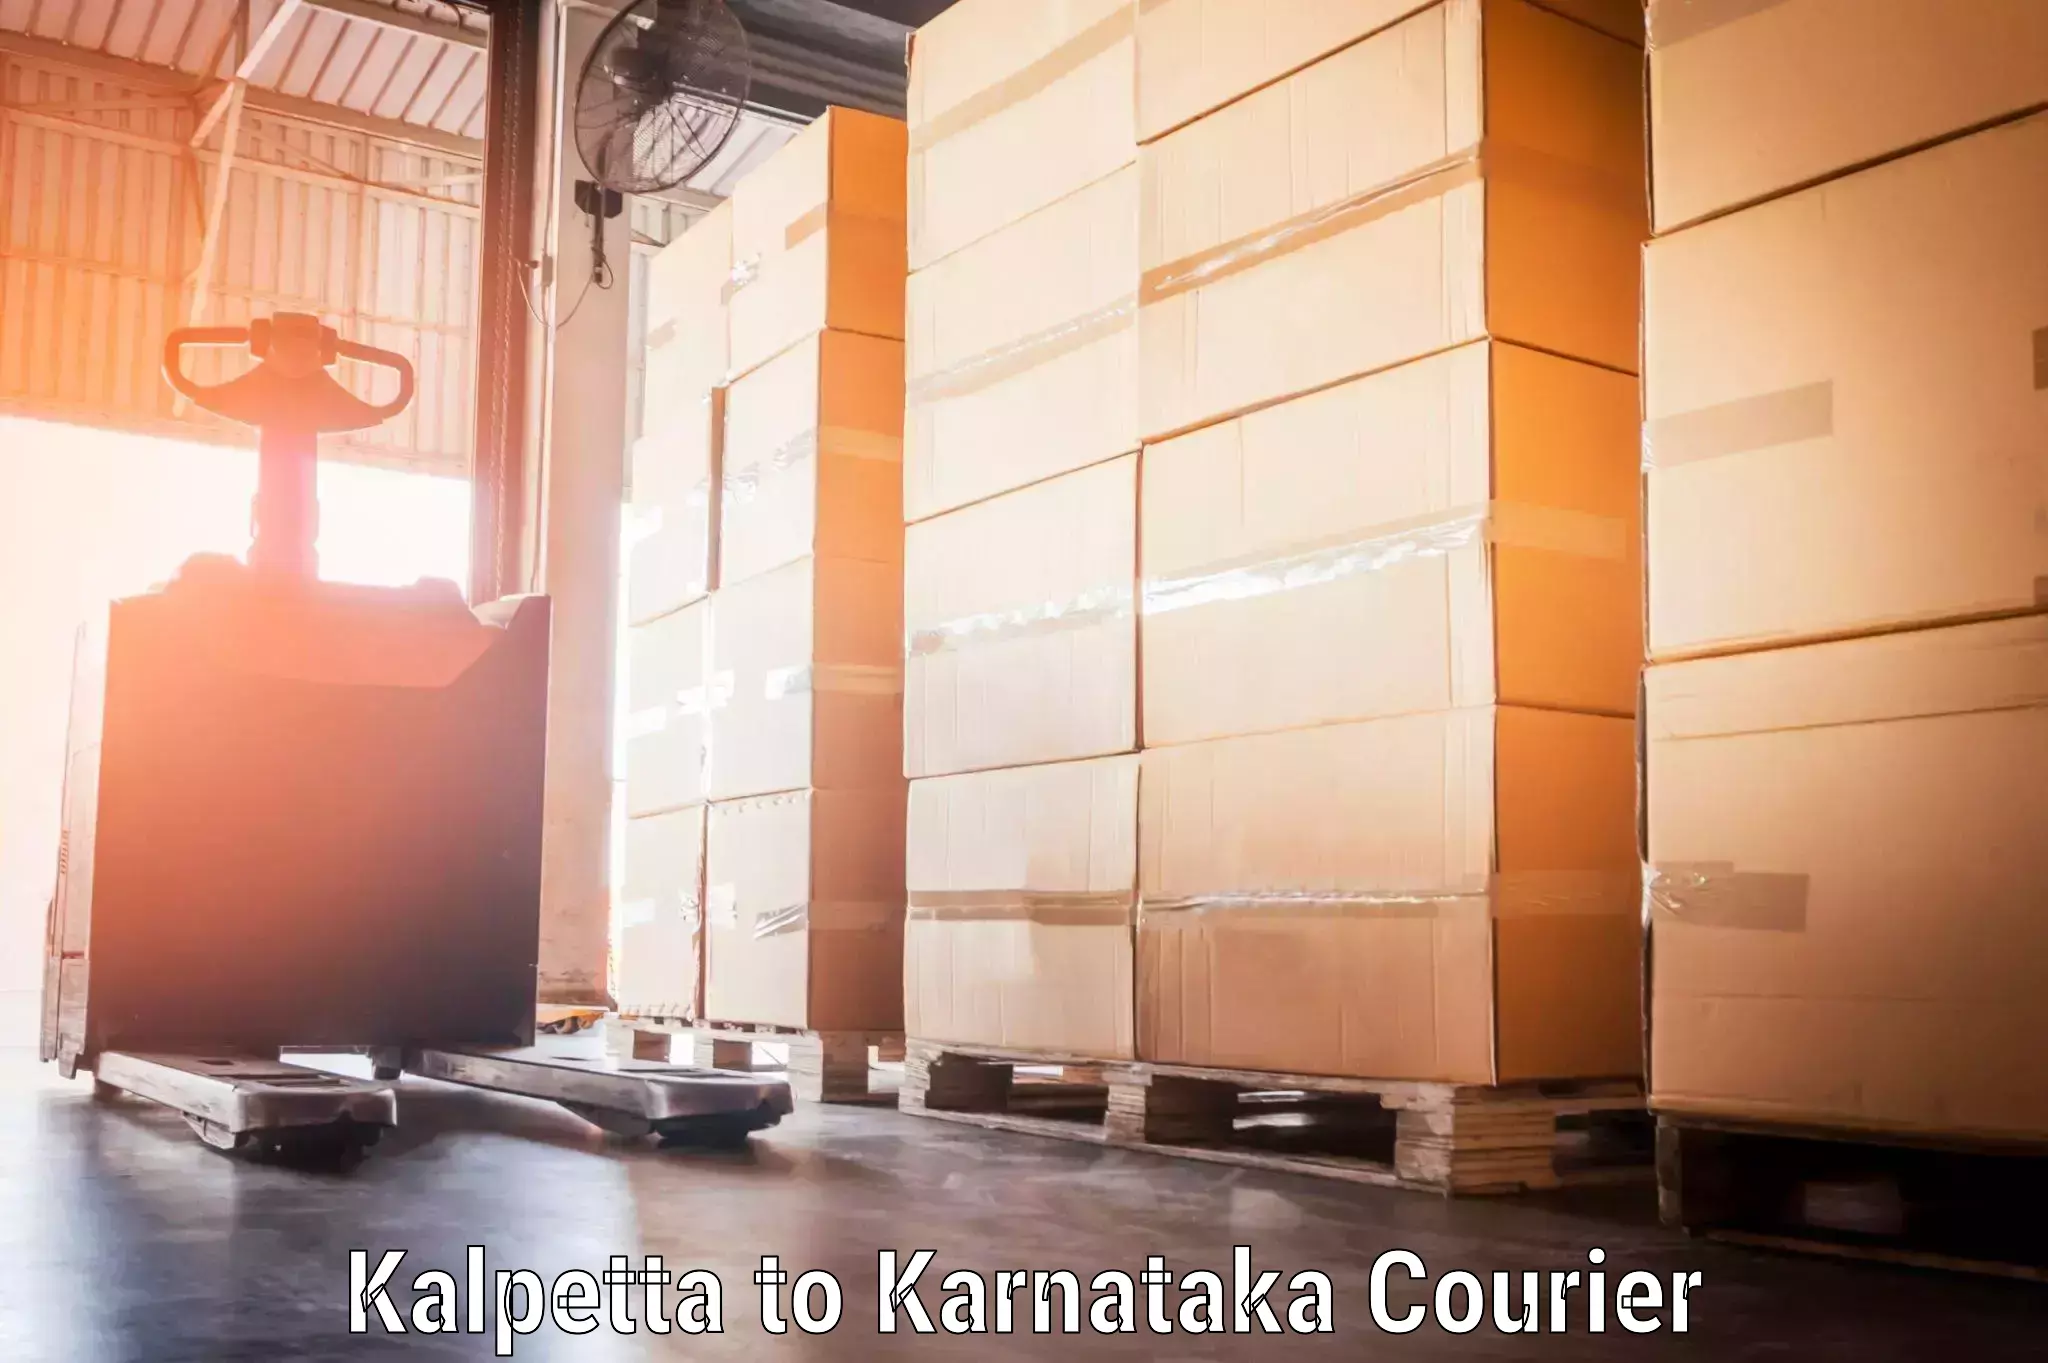 Personal effects shipping in Kalpetta to Dakshina Kannada